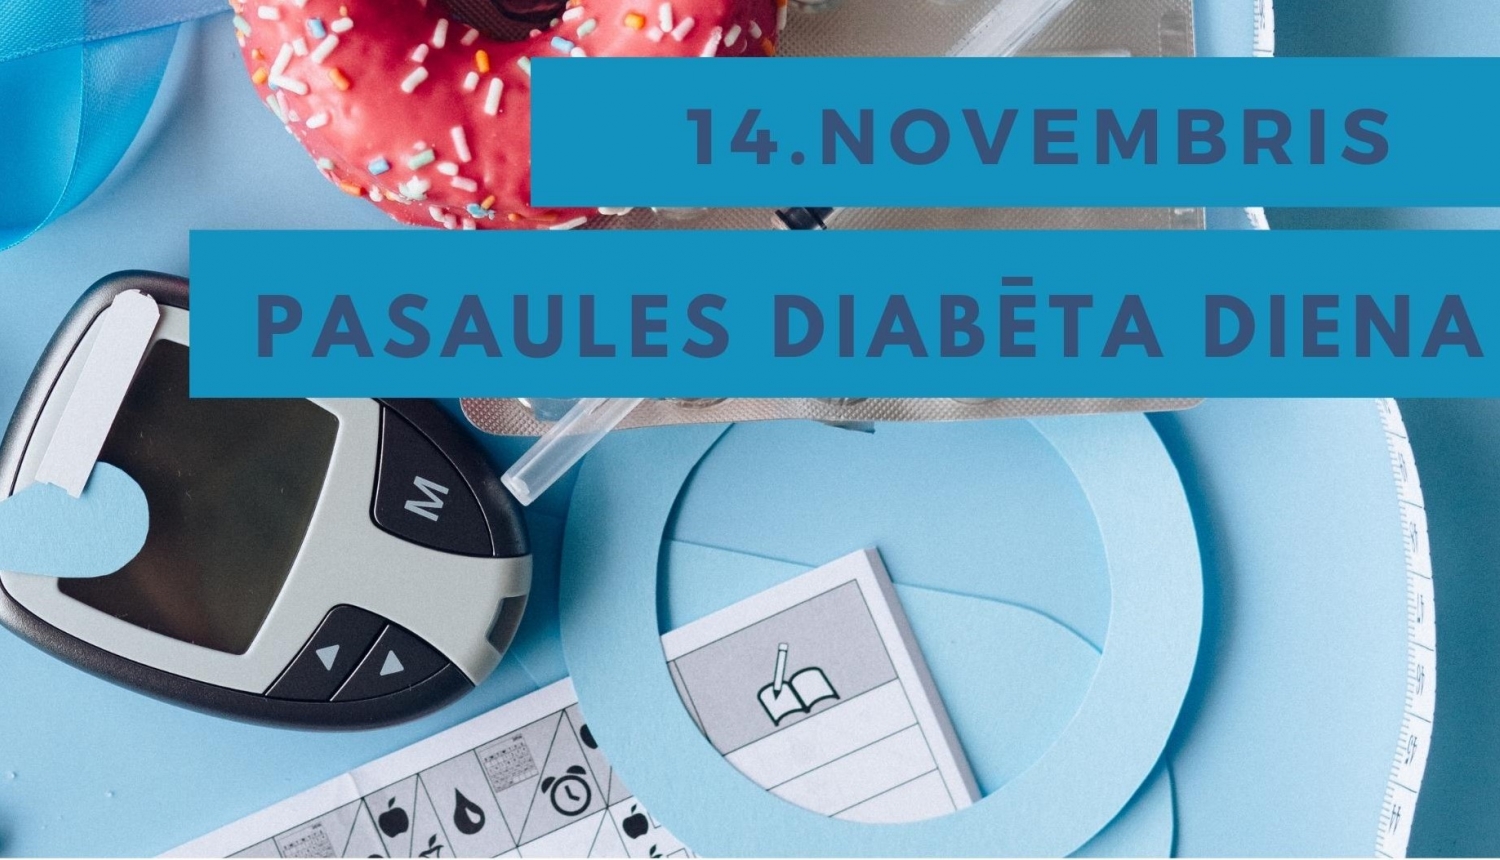 Uzraksts "14. novembris PASAULES DIABĒTA DIENA" ar cukura daudzuma asinīs mērīšanas aparātu un virtuli fonā